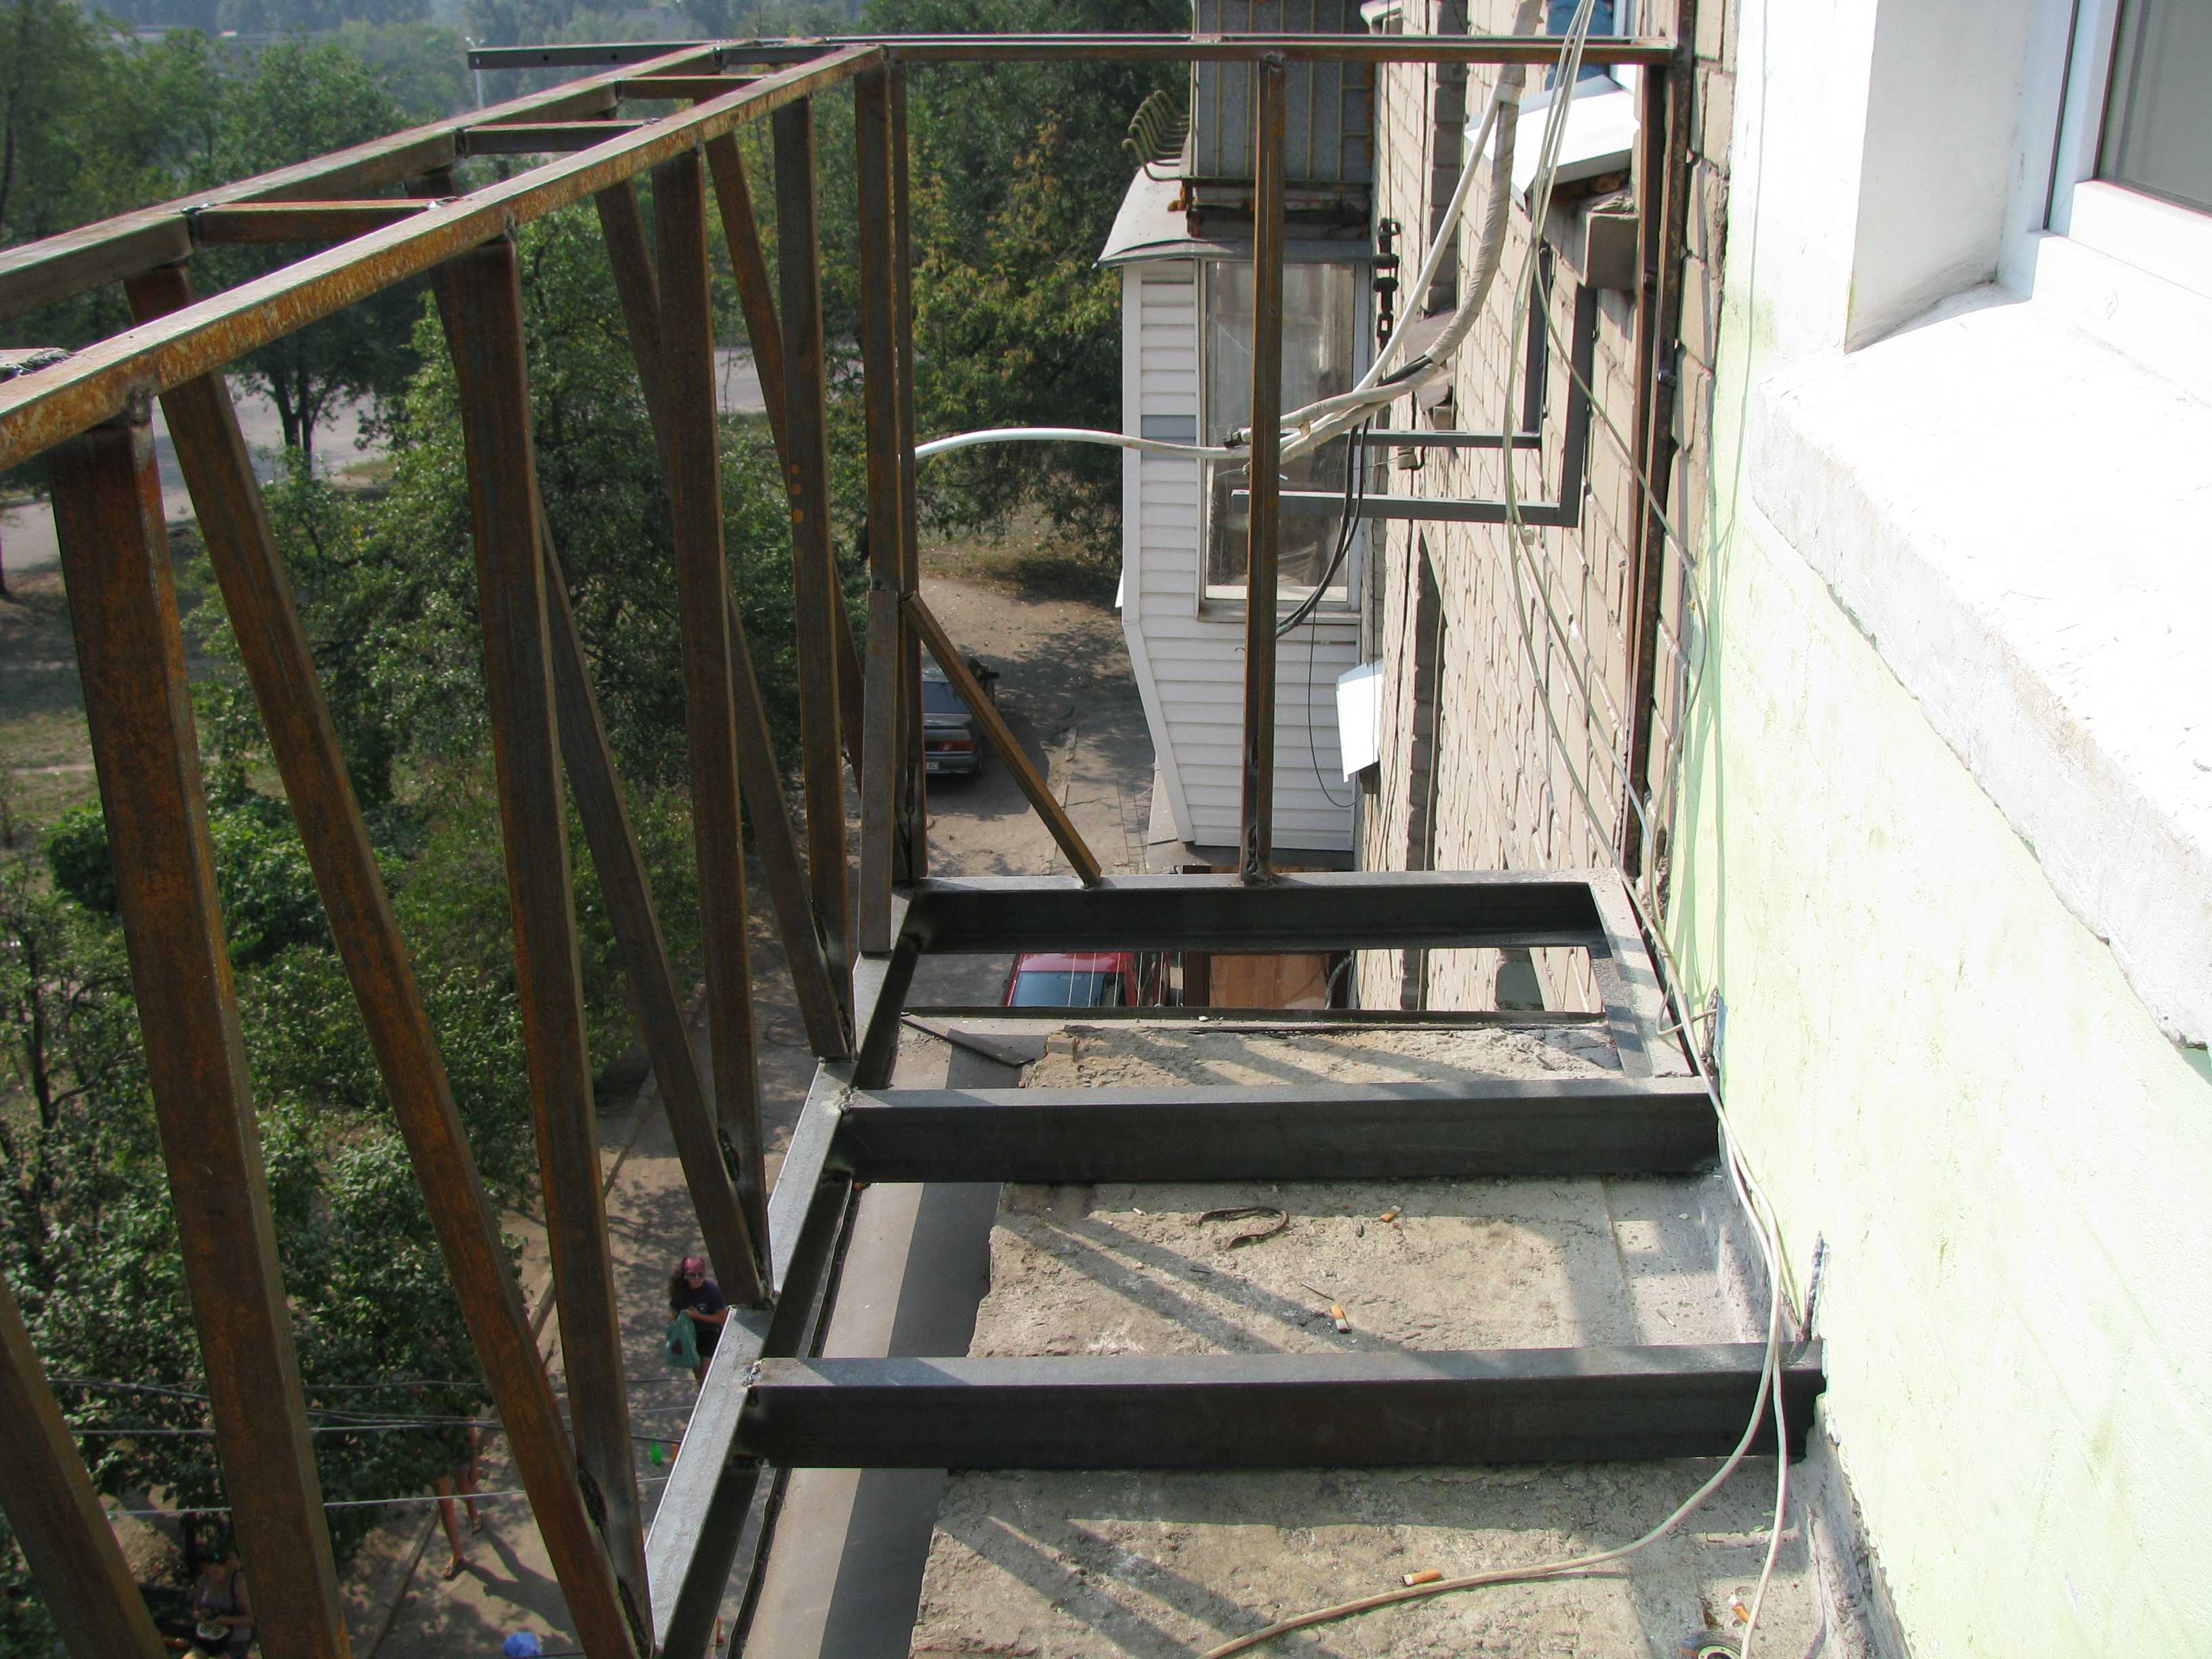 Балкон с выносом: способы расширения пространства